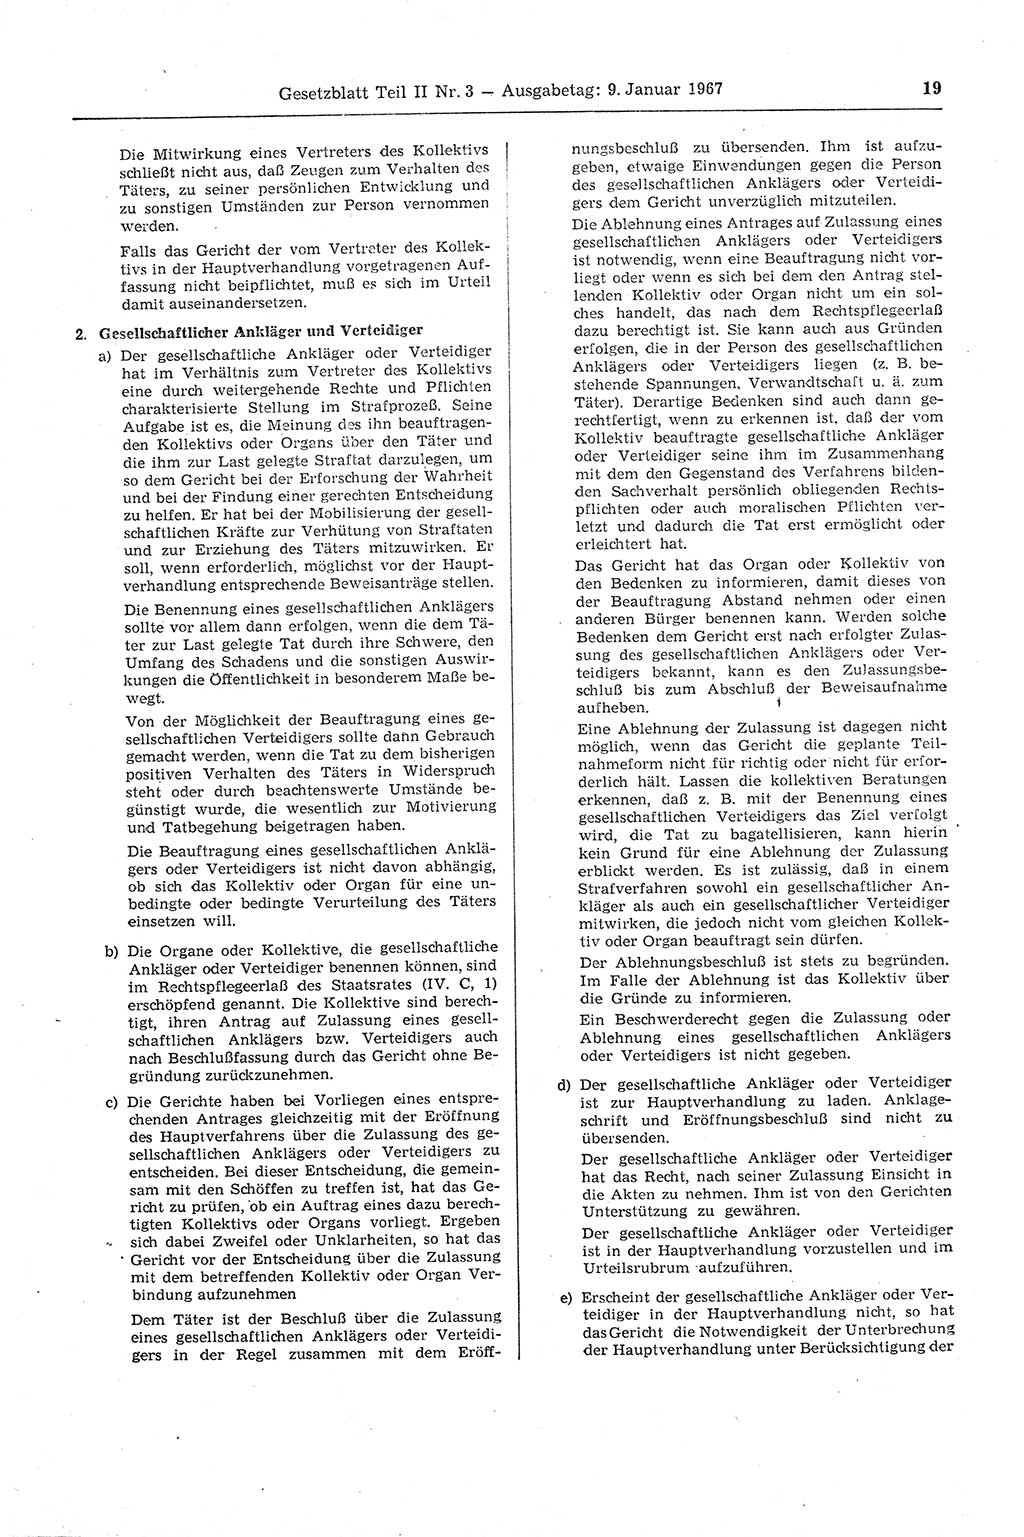 Gesetzblatt (GBl.) der Deutschen Demokratischen Republik (DDR) Teil ⅠⅠ 1967, Seite 19 (GBl. DDR ⅠⅠ 1967, S. 19)